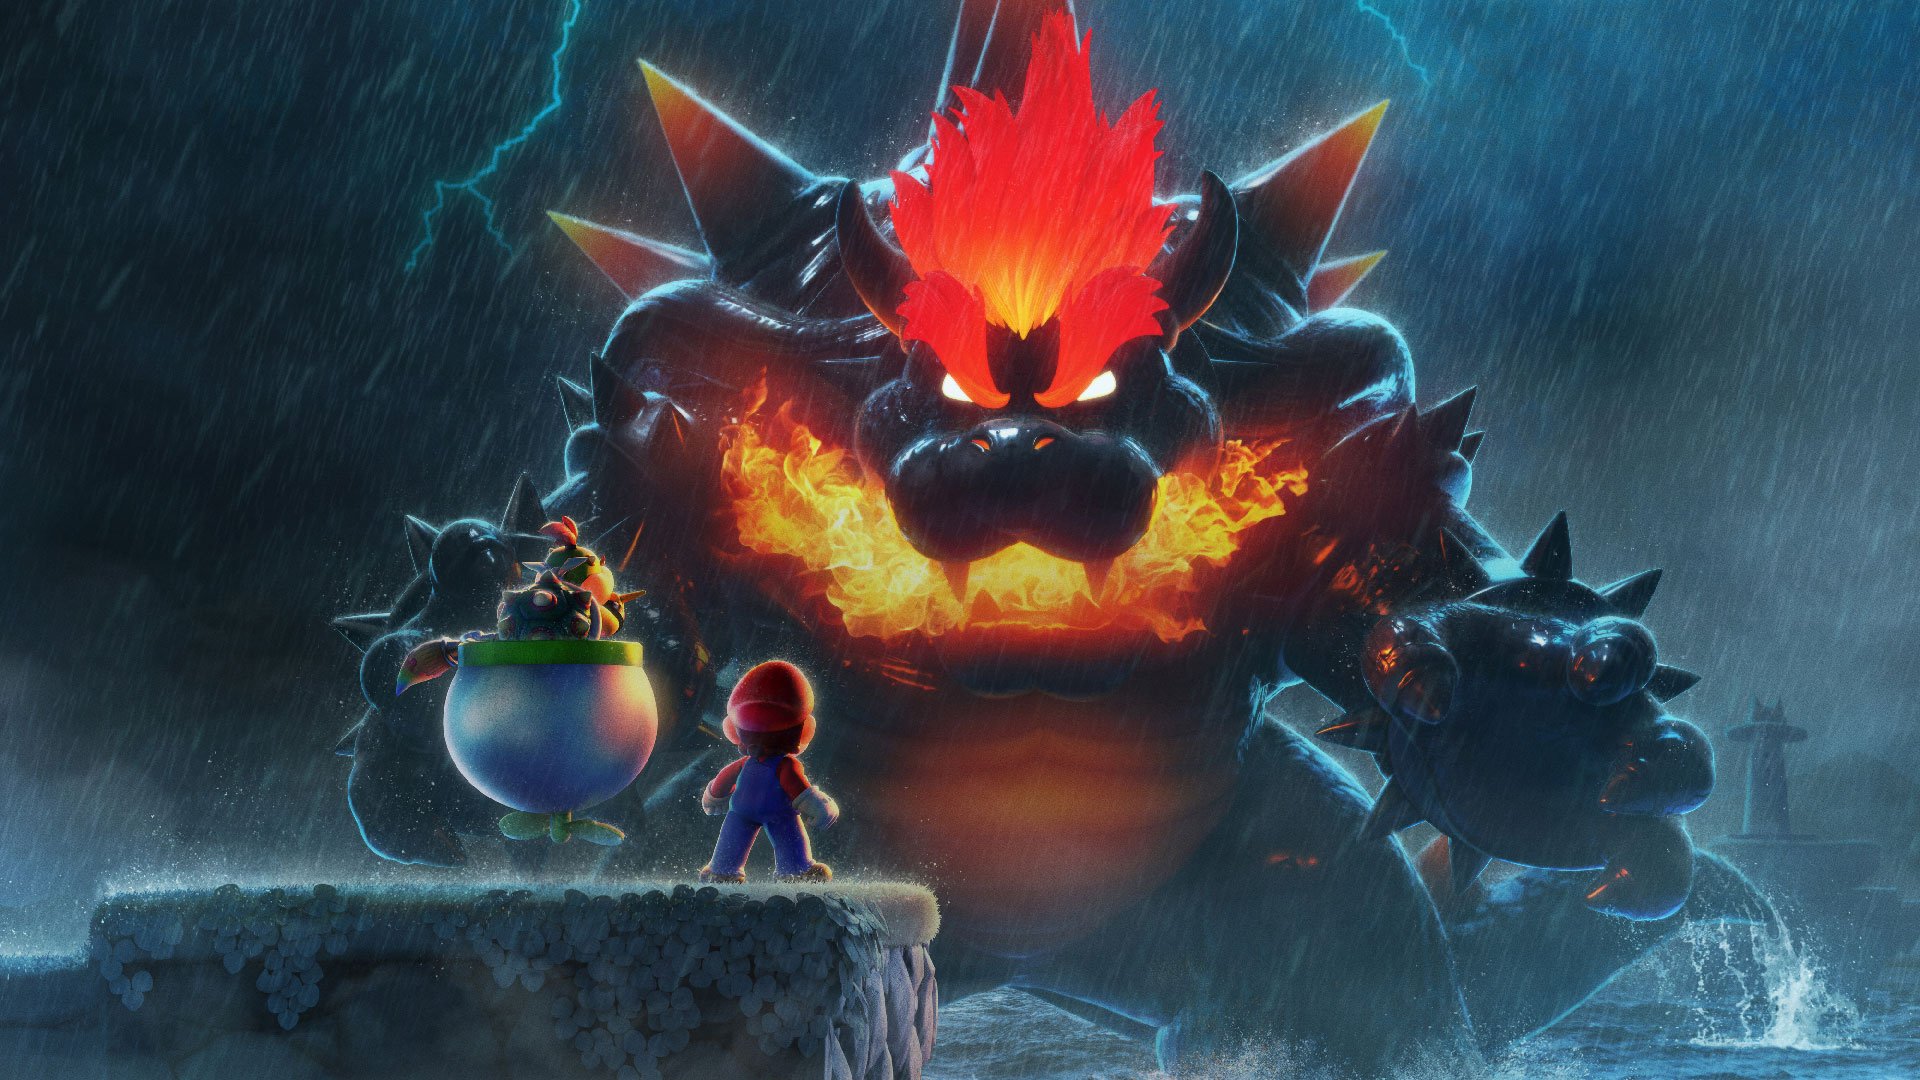 Super Mario 3D World revela la furia de Bowser